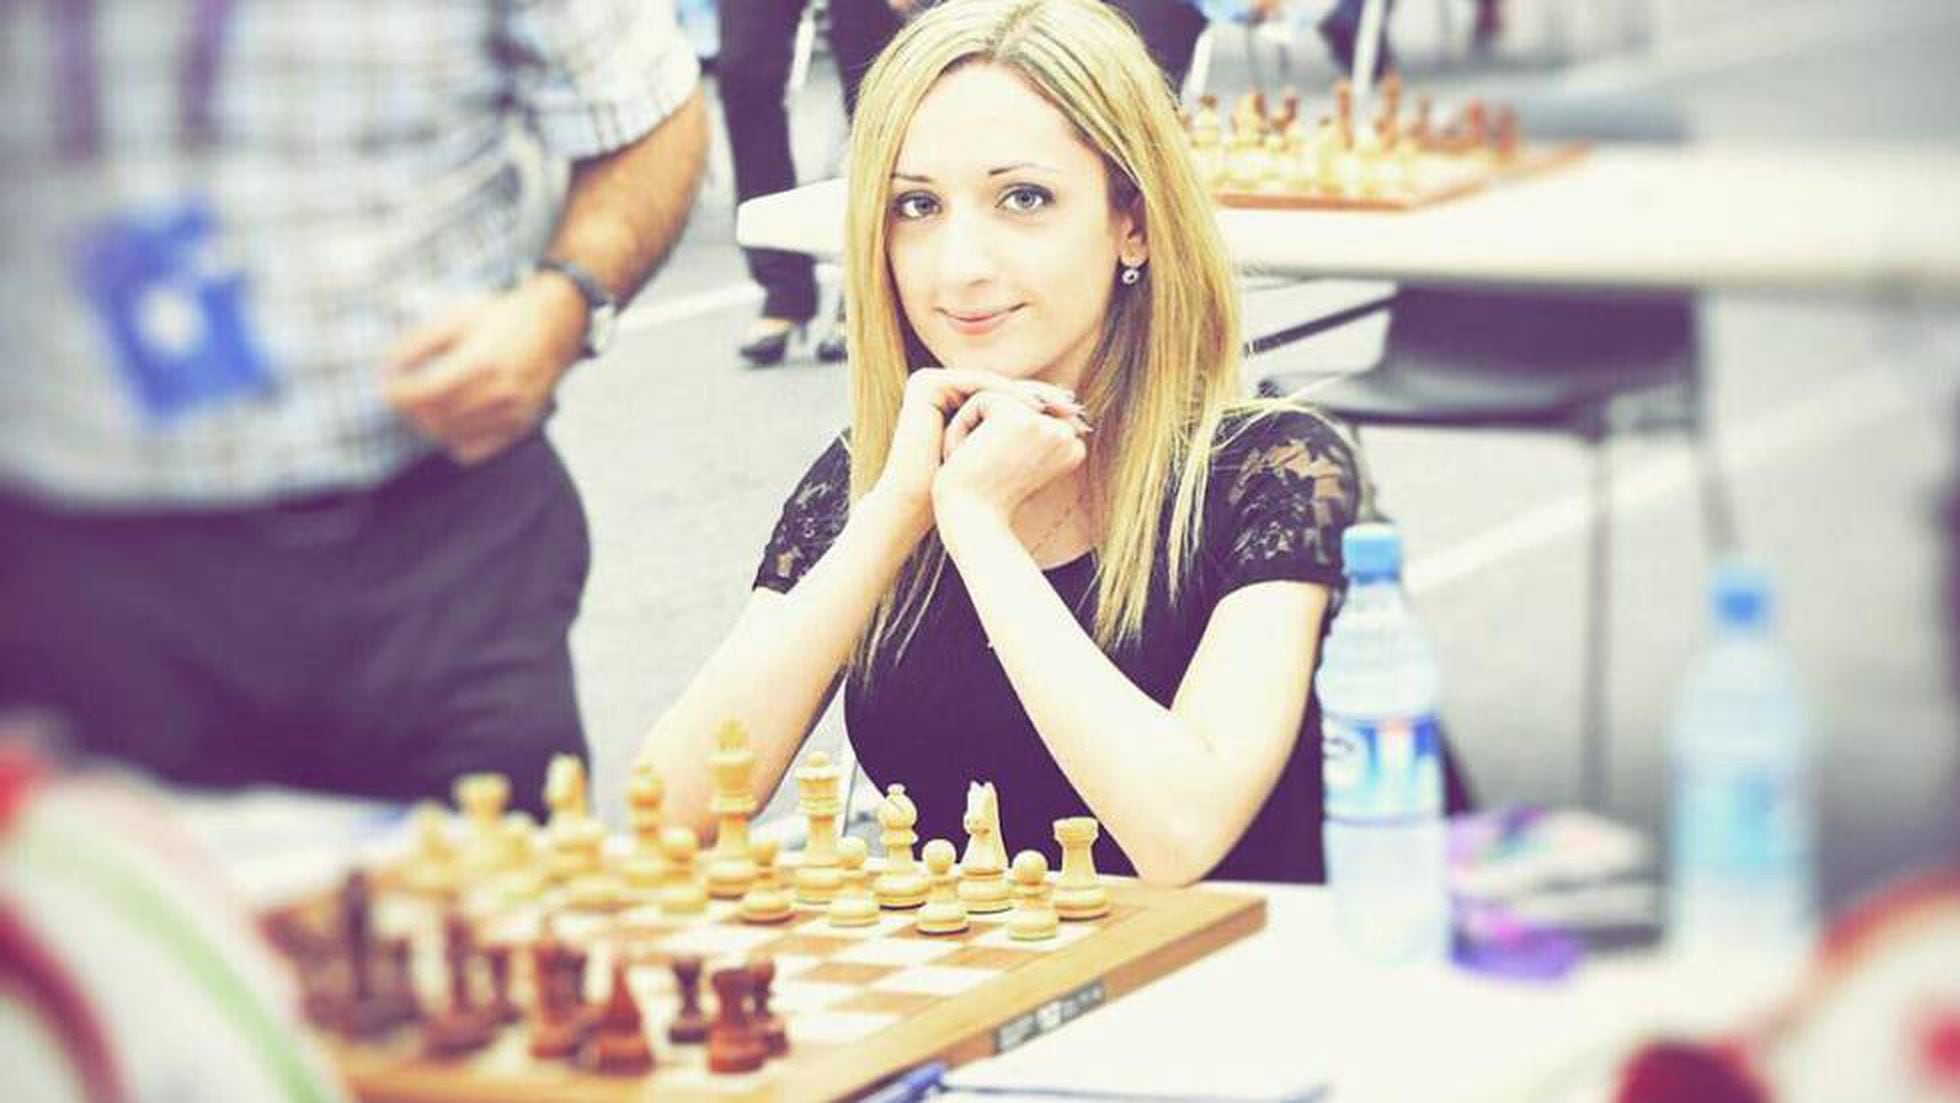 Campeã de Xadrez não vai ao Mundial porque se recusa a vestir segundo a lei  islâmica